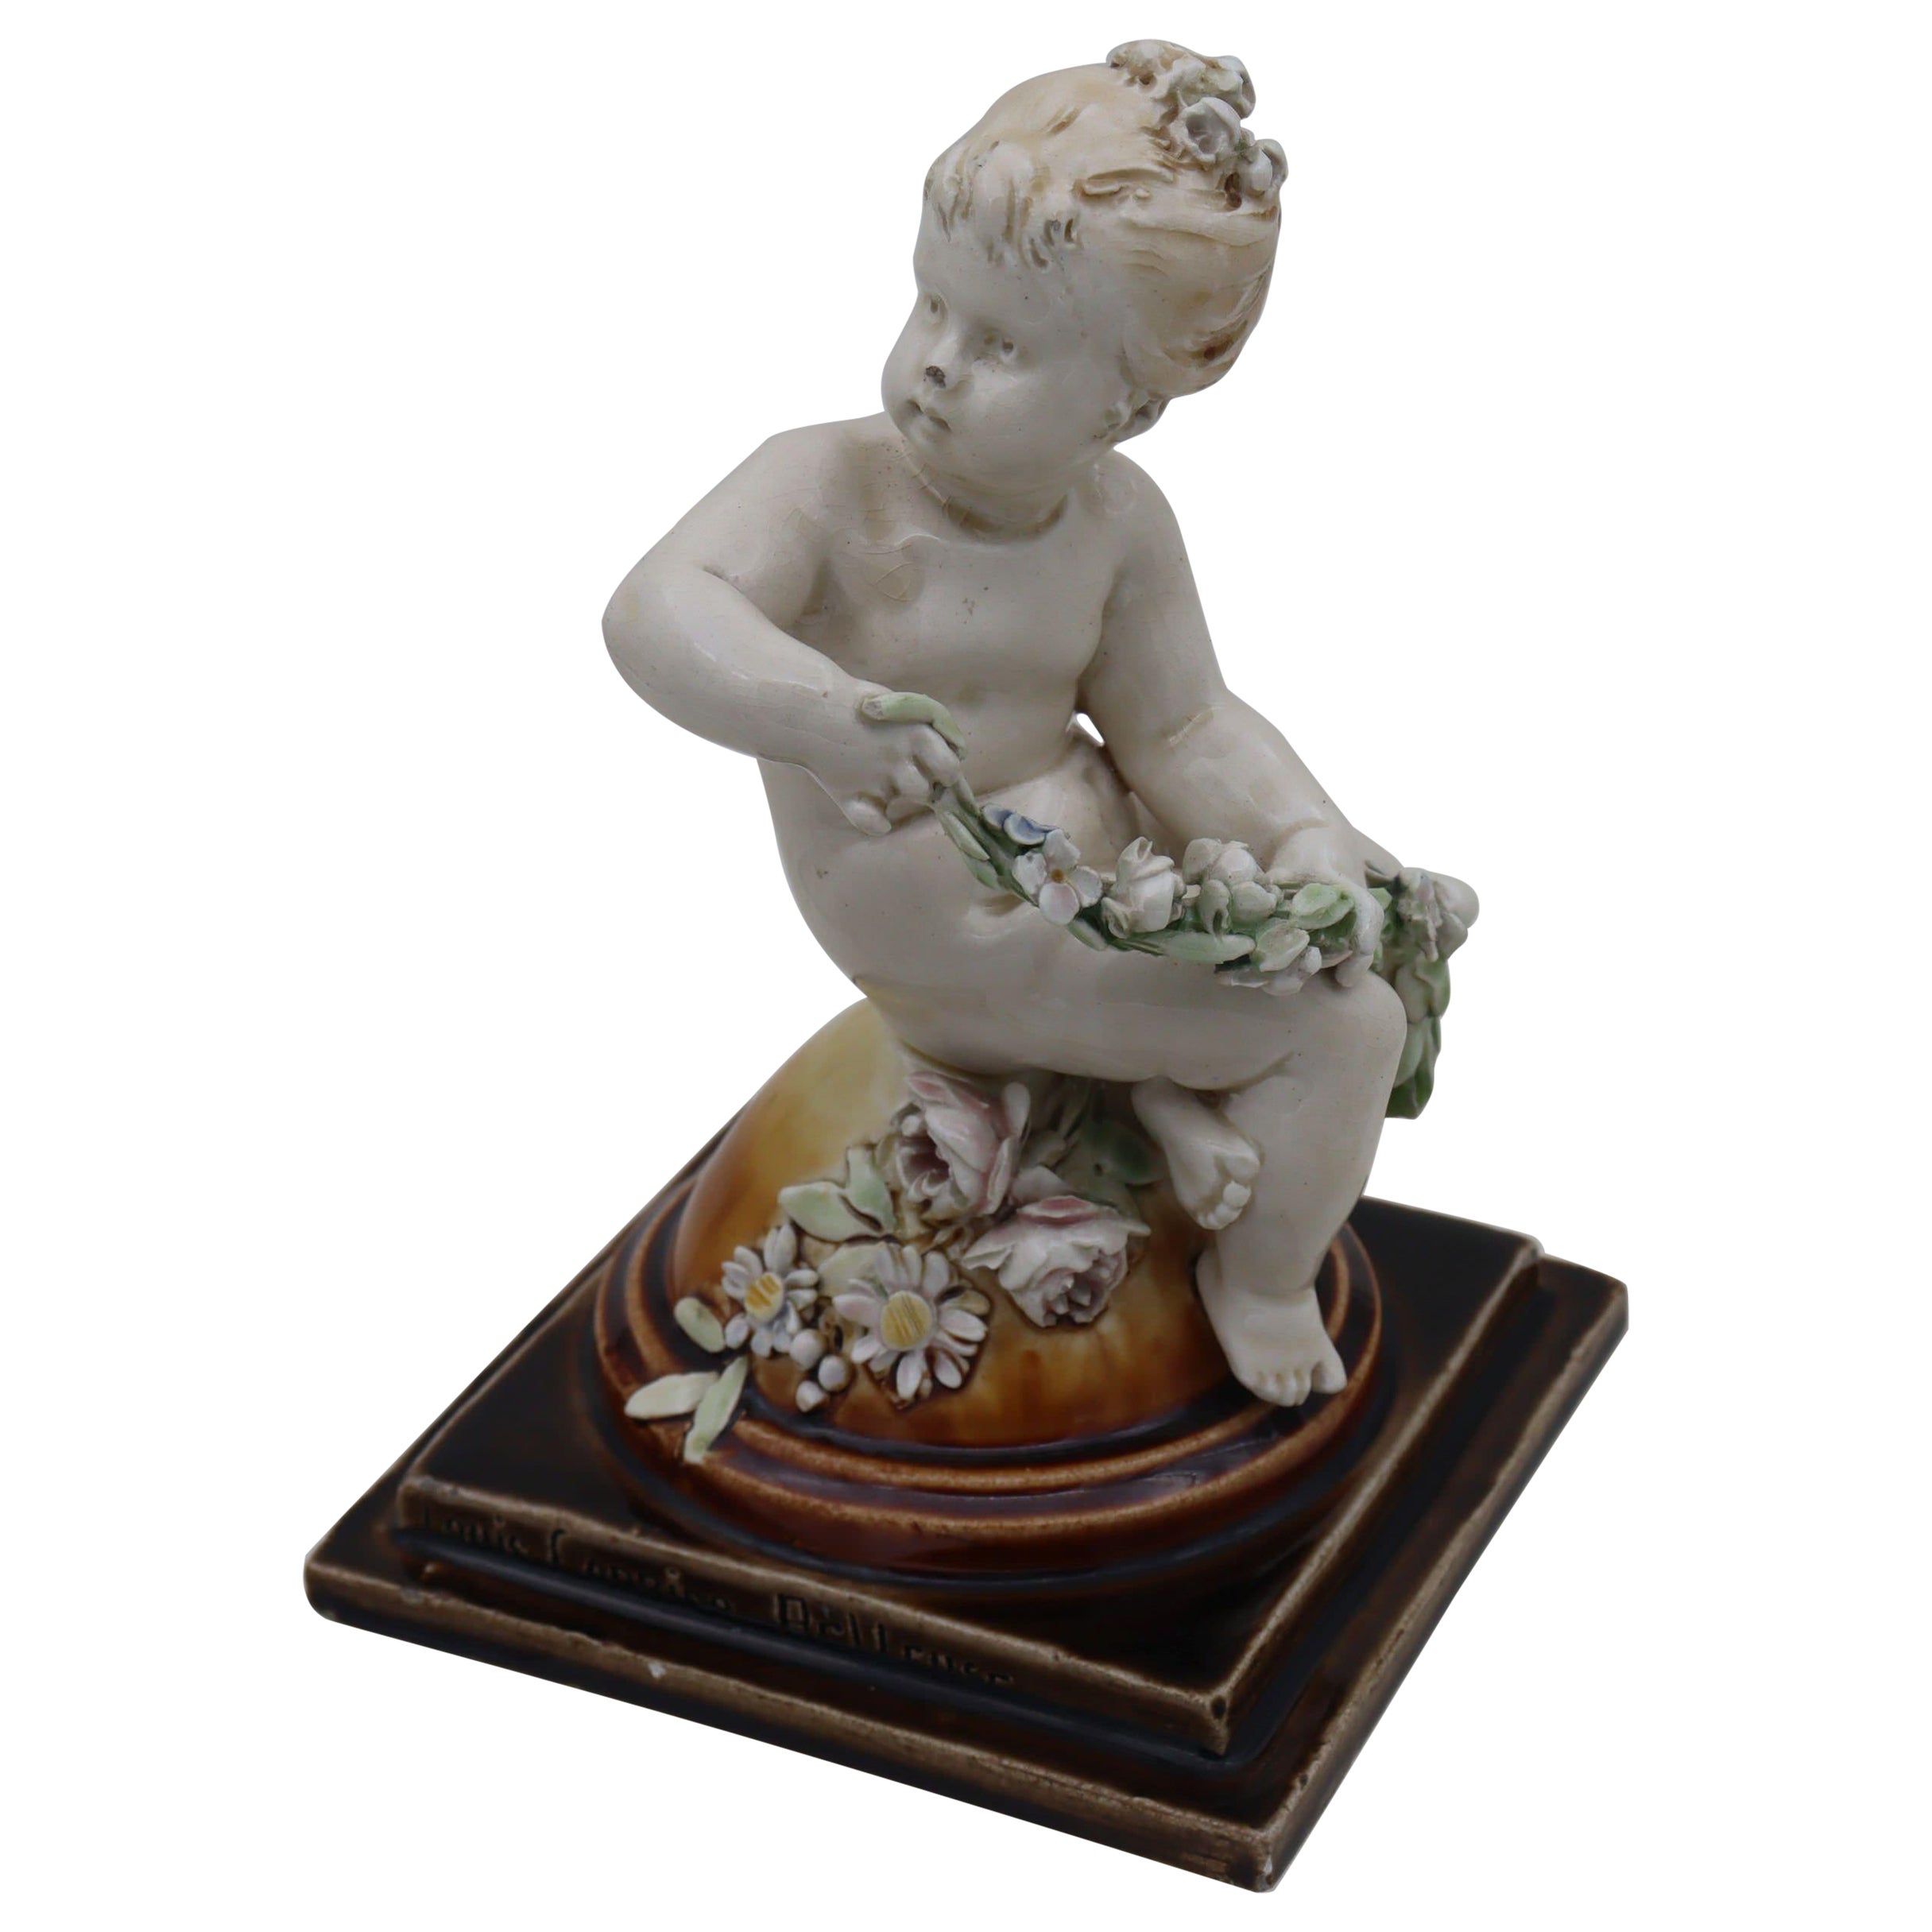 Figurine d'un chérubin par Louis Carrier-Belleuse